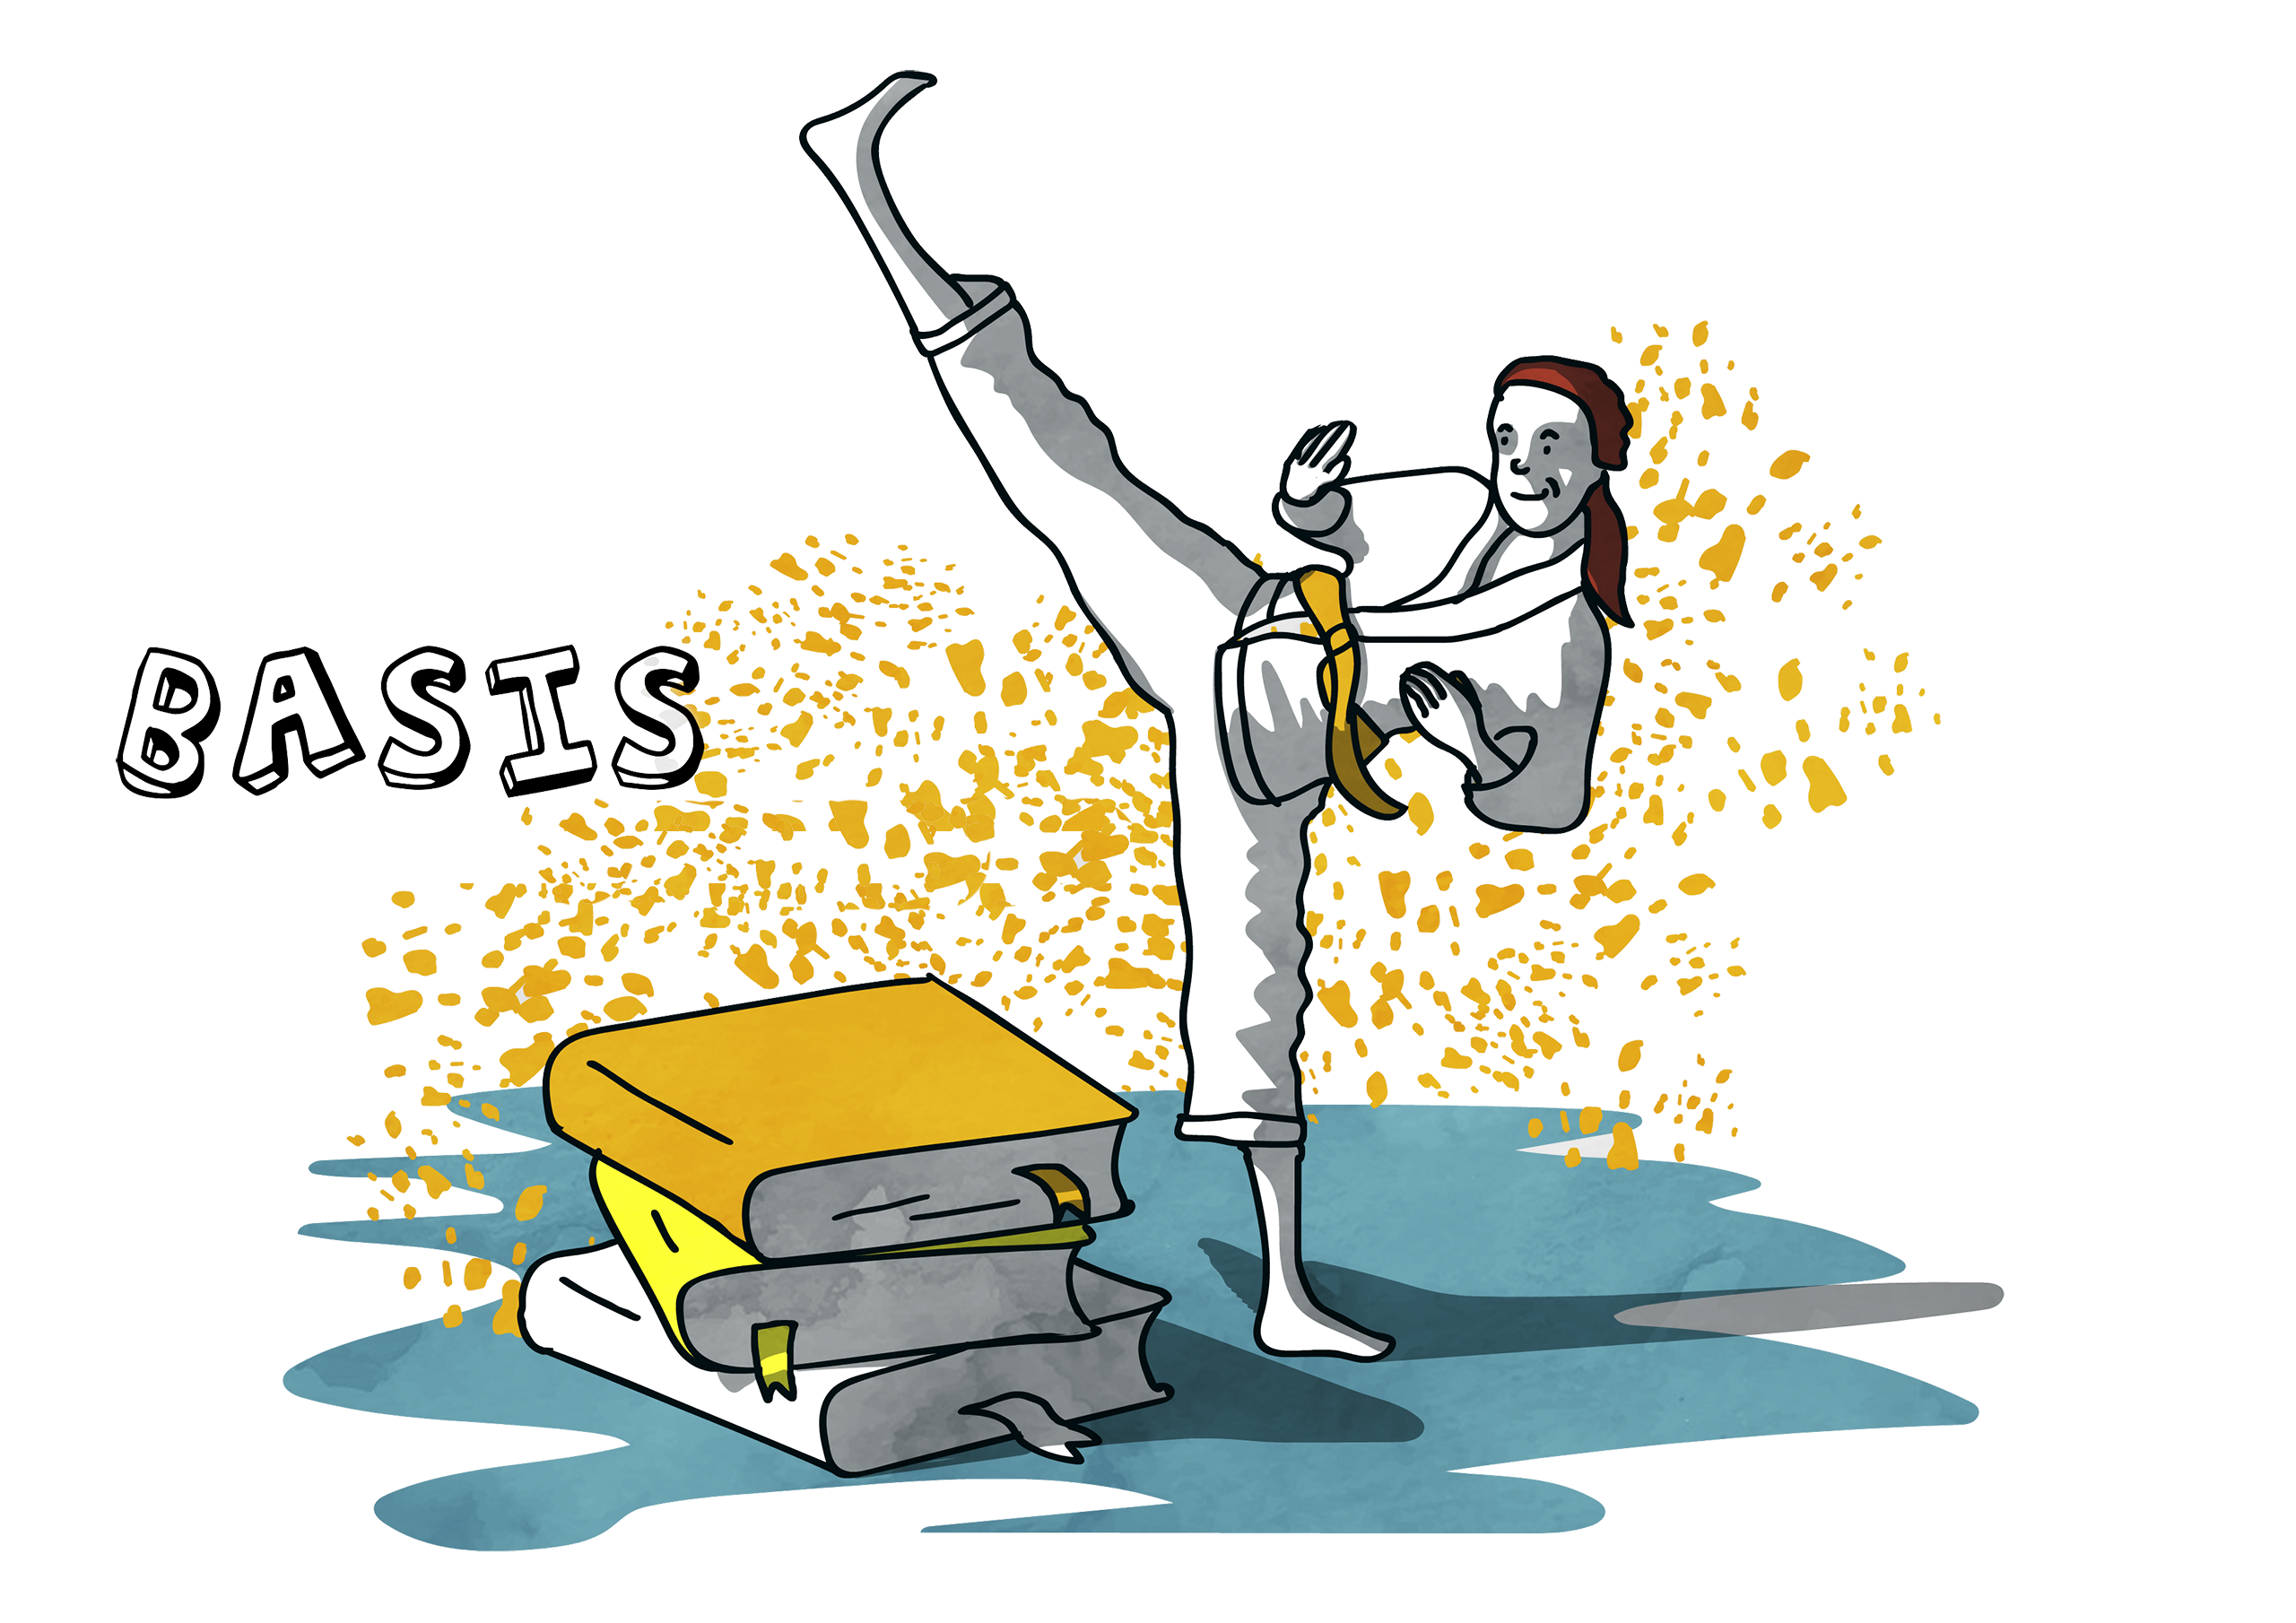 Illustratie van een persoon in een judopak die een hoge trap uitvoert naast een stapel boeken in de kleuren wit, geel en oranje, symbolisch voor de niveaus White Belt, Yellow Belt en Orange Belt, die de progressie van een Lean White Belt tot en met een Lean Orange Belt voorstellen, als fundament van Lean training en opleiding.